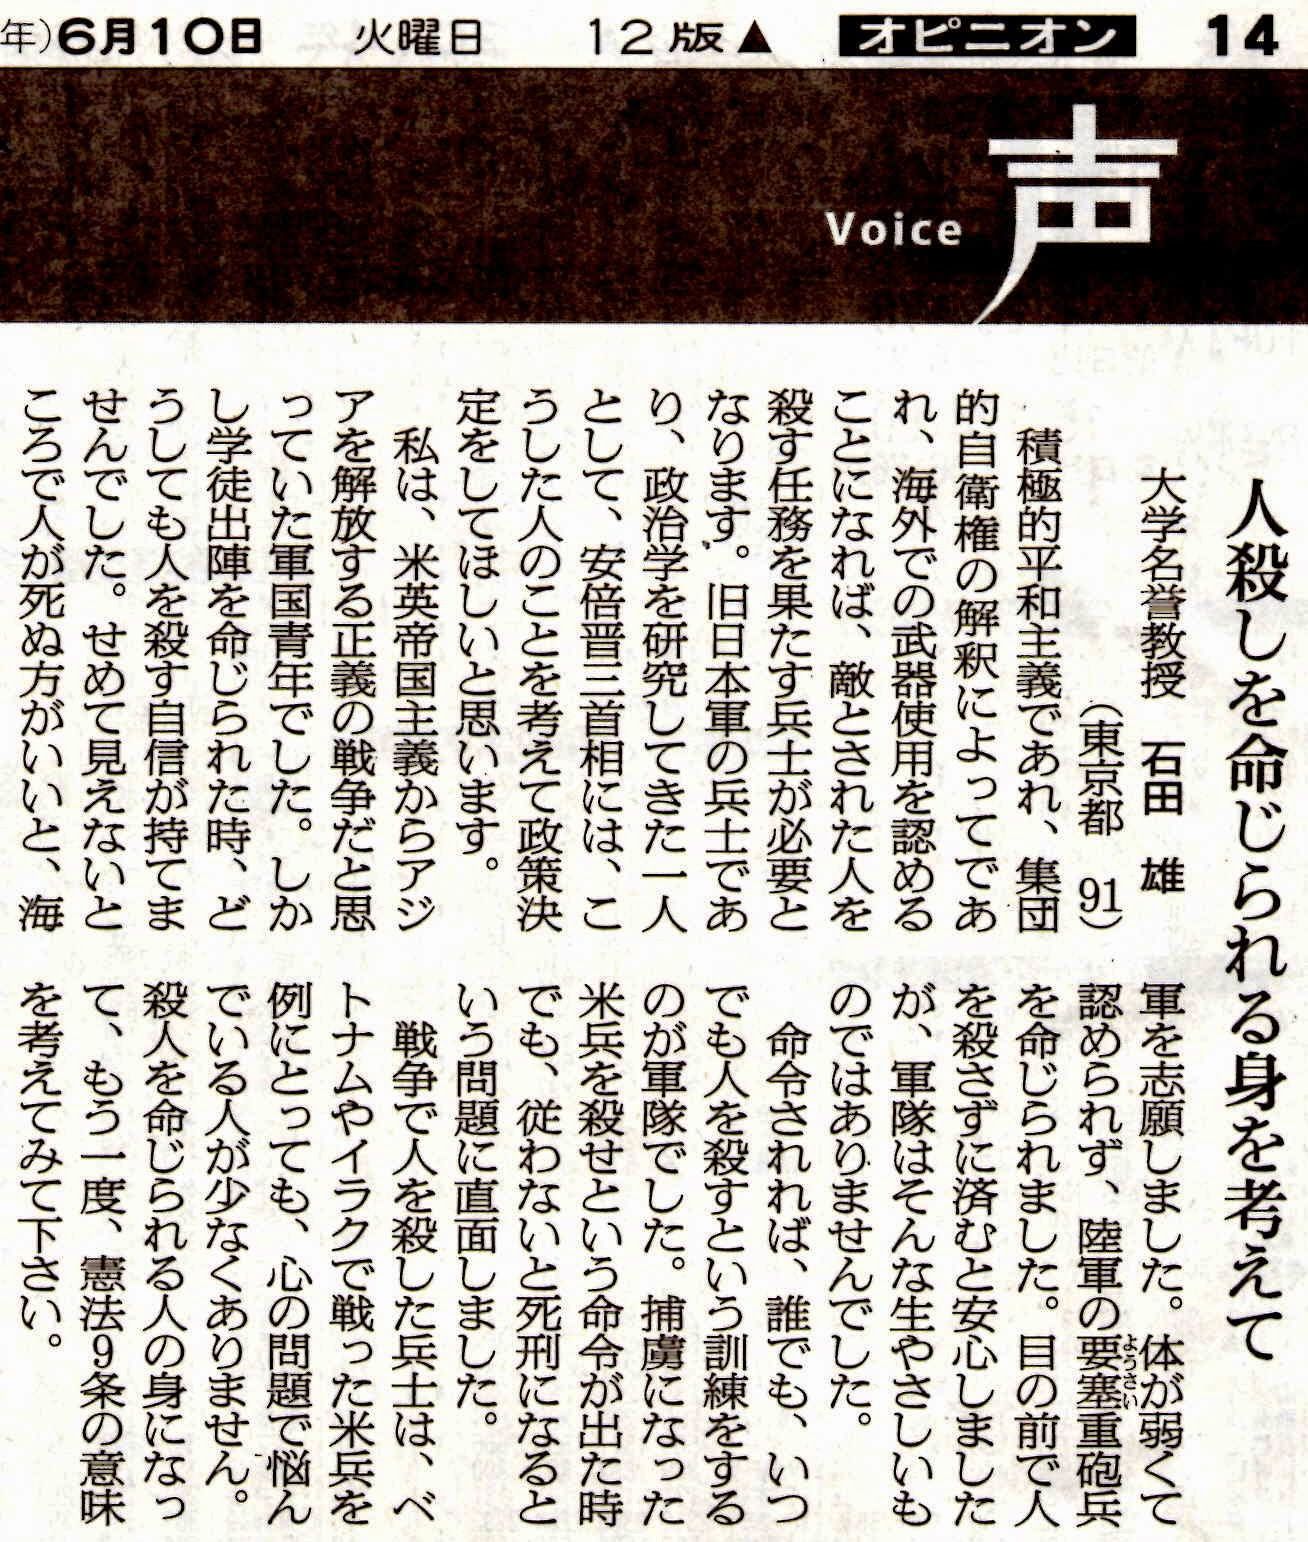 朝日新聞「声」 石田雄 大学名誉教授「人殺しを命じられる身を・・・」